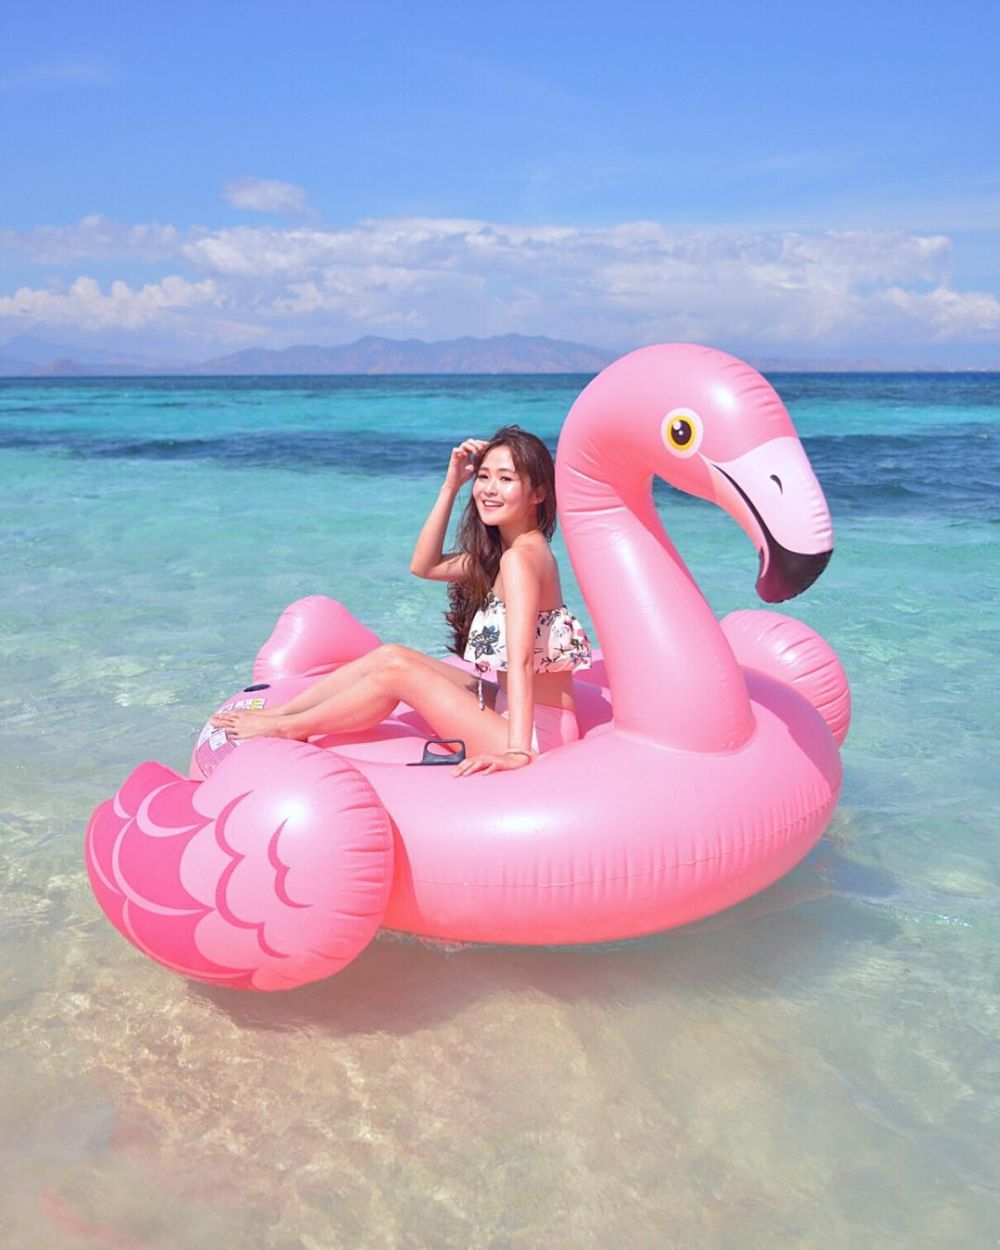 Chiêm ngưỡng bãi biển hồng đẹp như cổ tích ở Indonesia 5